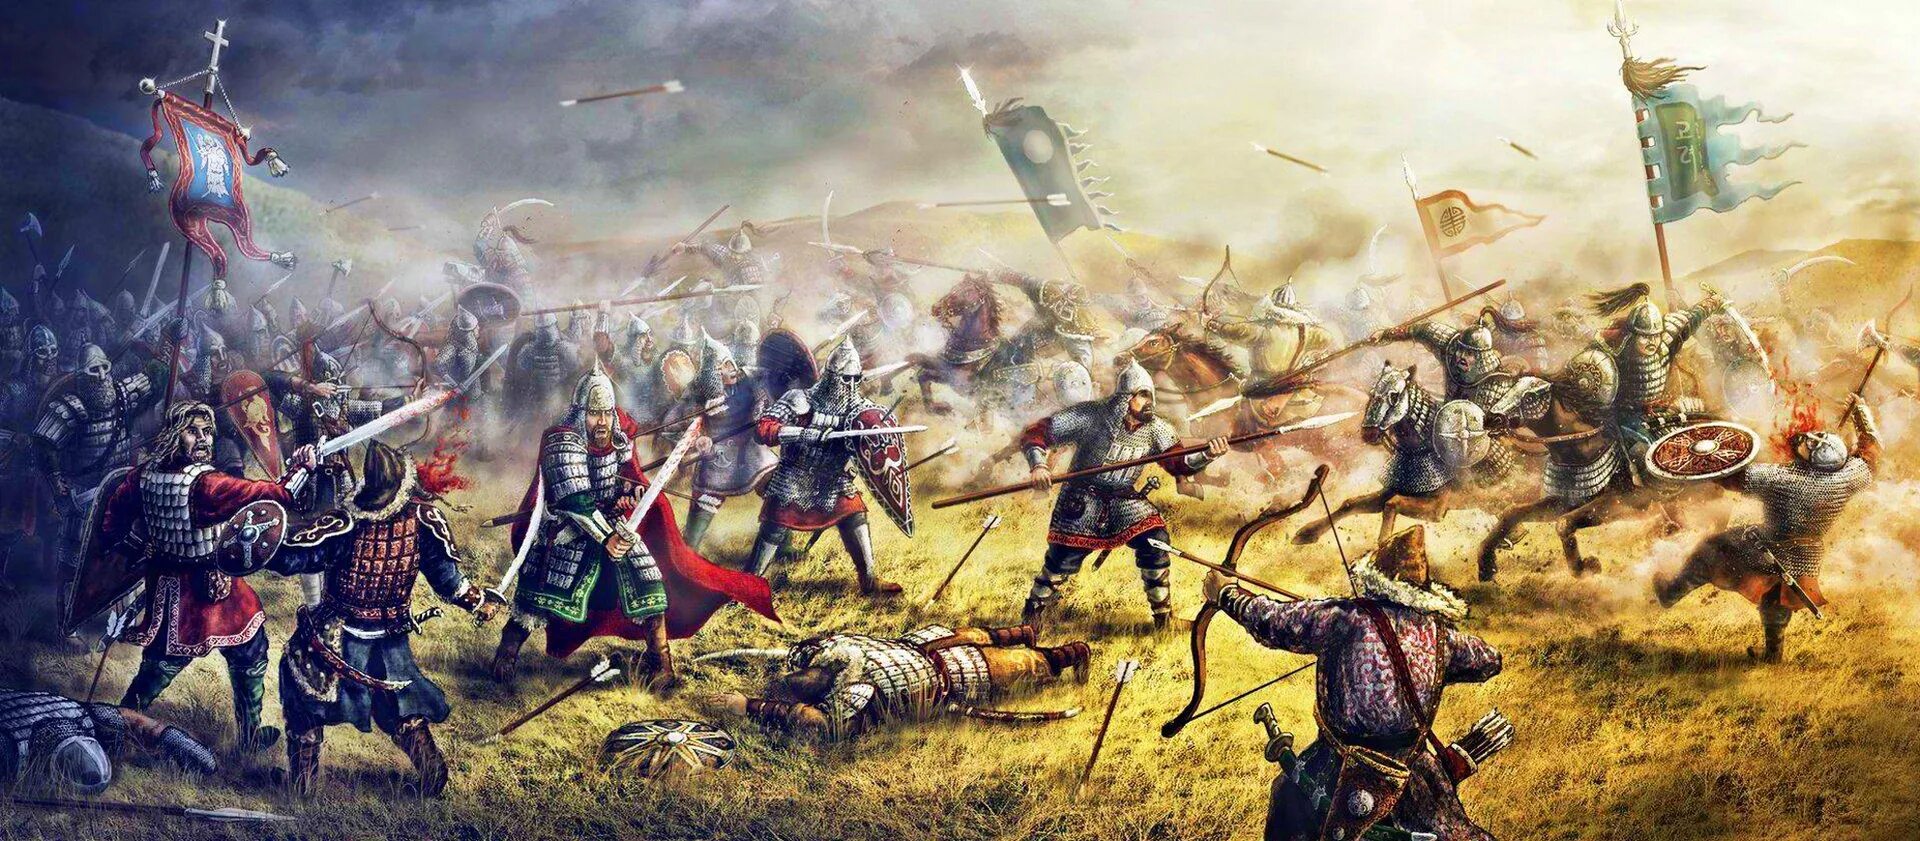 Сражения 12 века. Битва при Калке 1223. Битва на реке Калке 1223. 31 Мая 1223 битва на реке Калке. Битва с монголами на реке Калке.